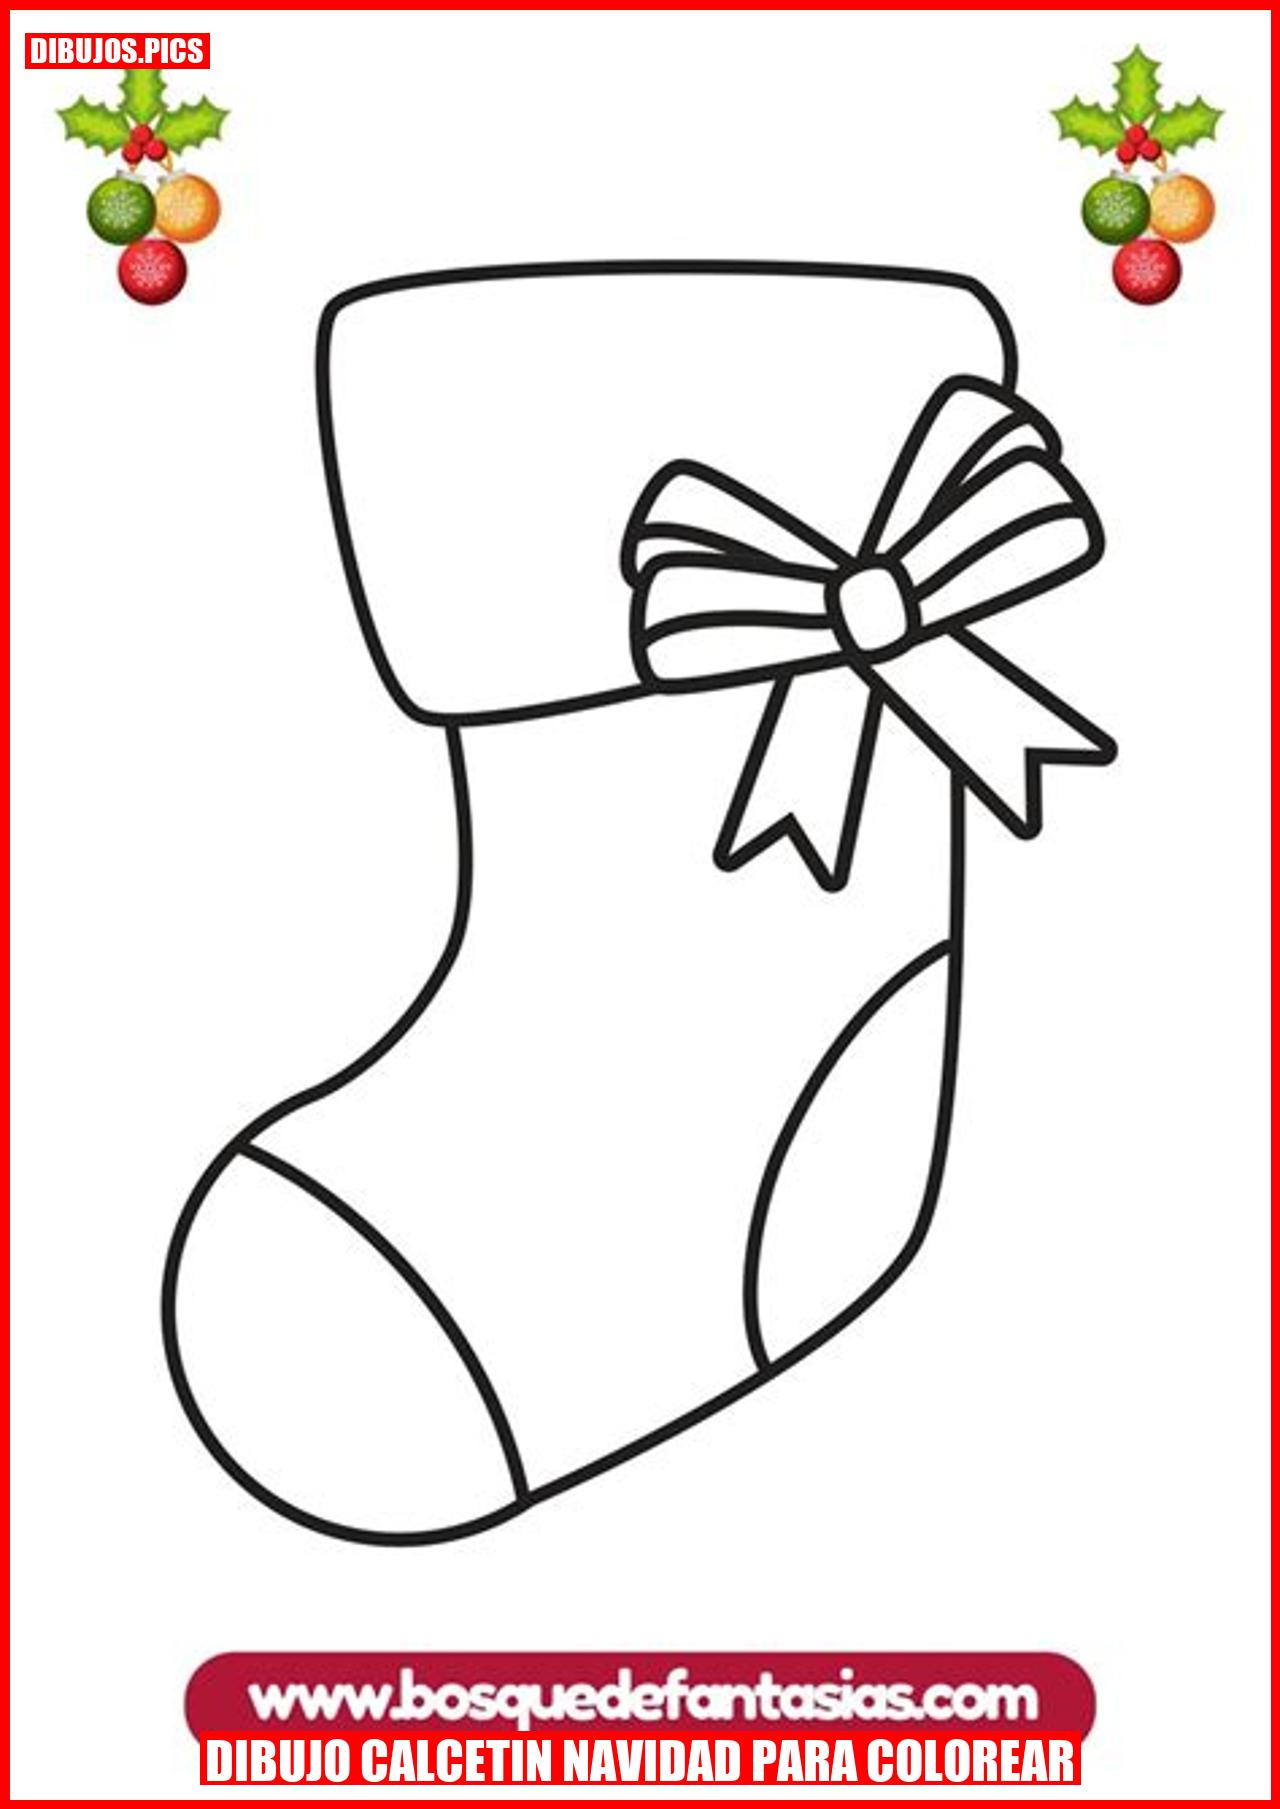 dibujo calcetin navidad para colorear